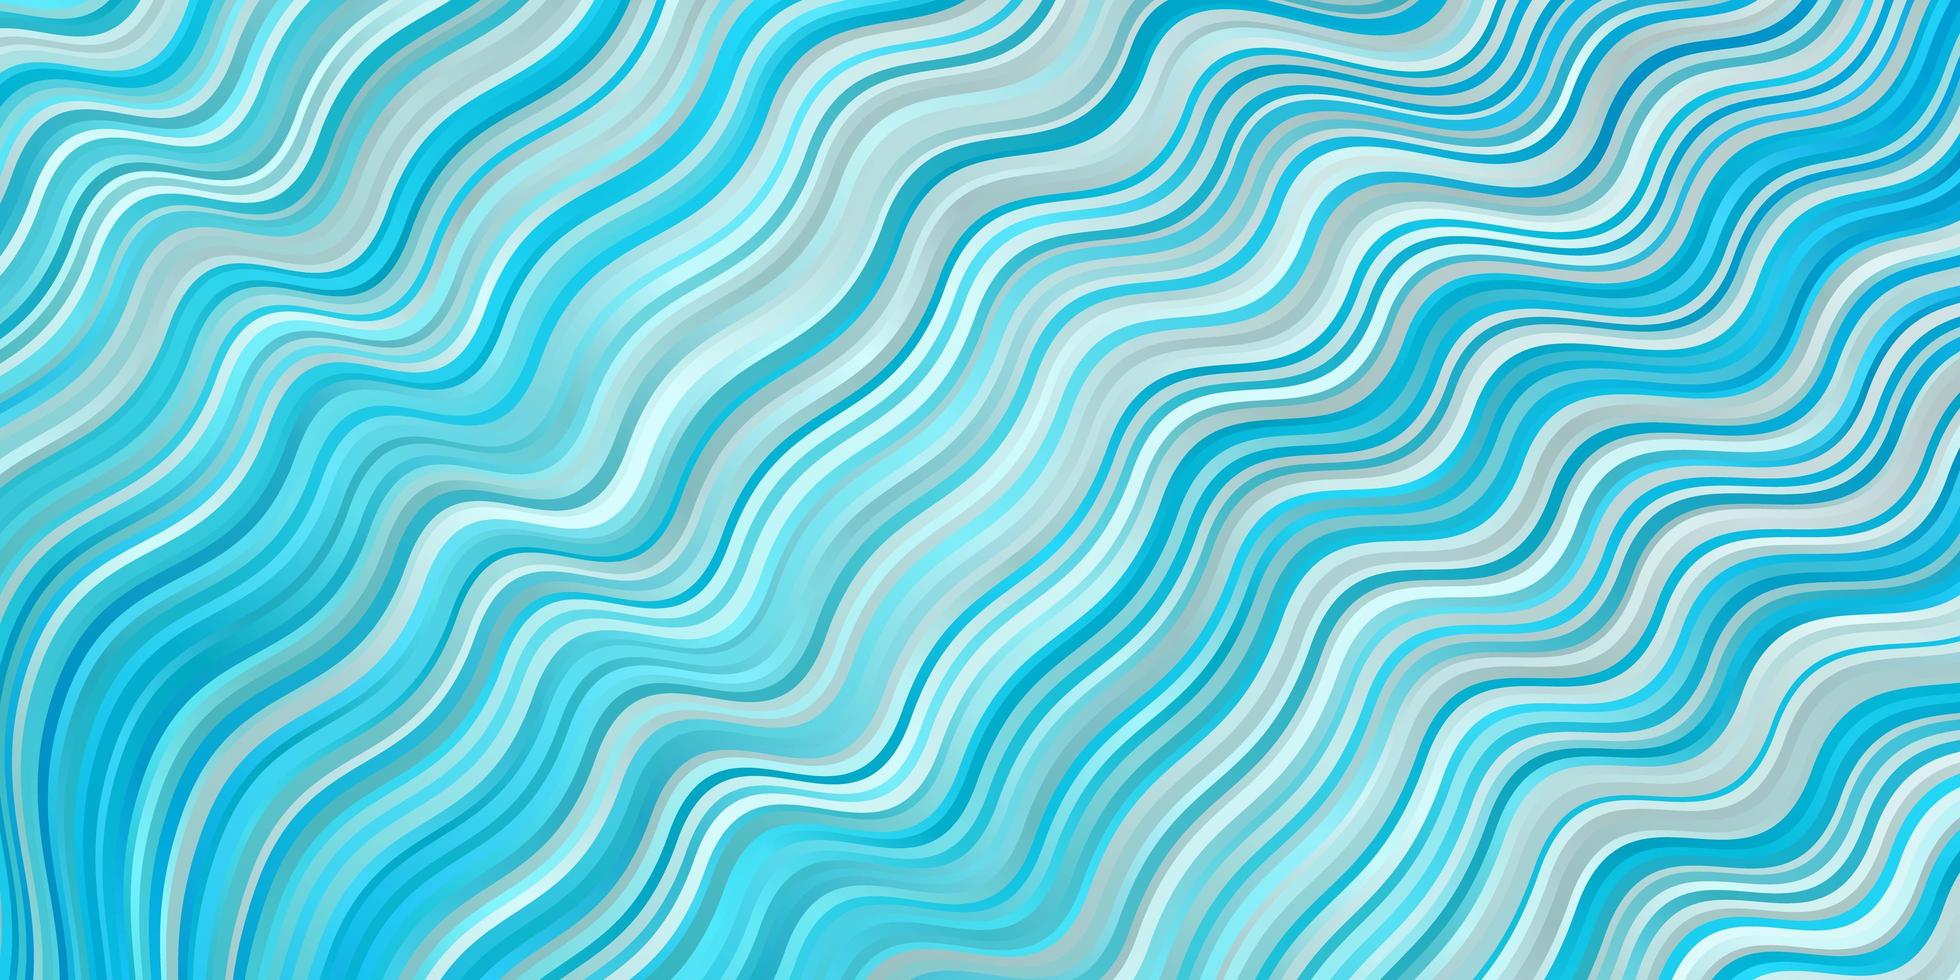 sfondo vettoriale azzurro con linee piegate